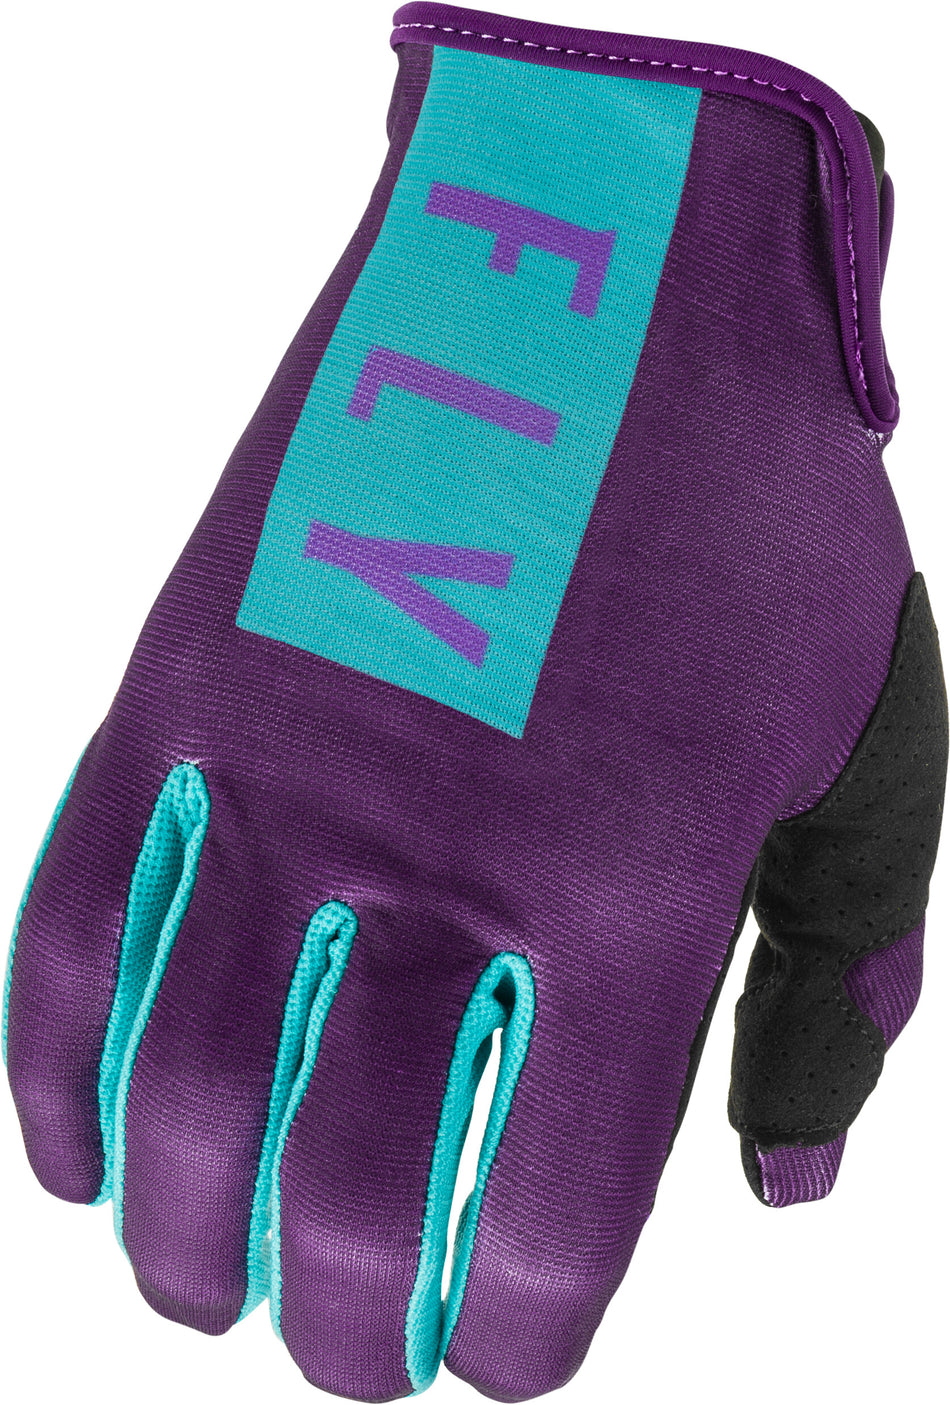 FLY RACING Women's Lite Gloves Purple/Blue Sz 05 374-61805